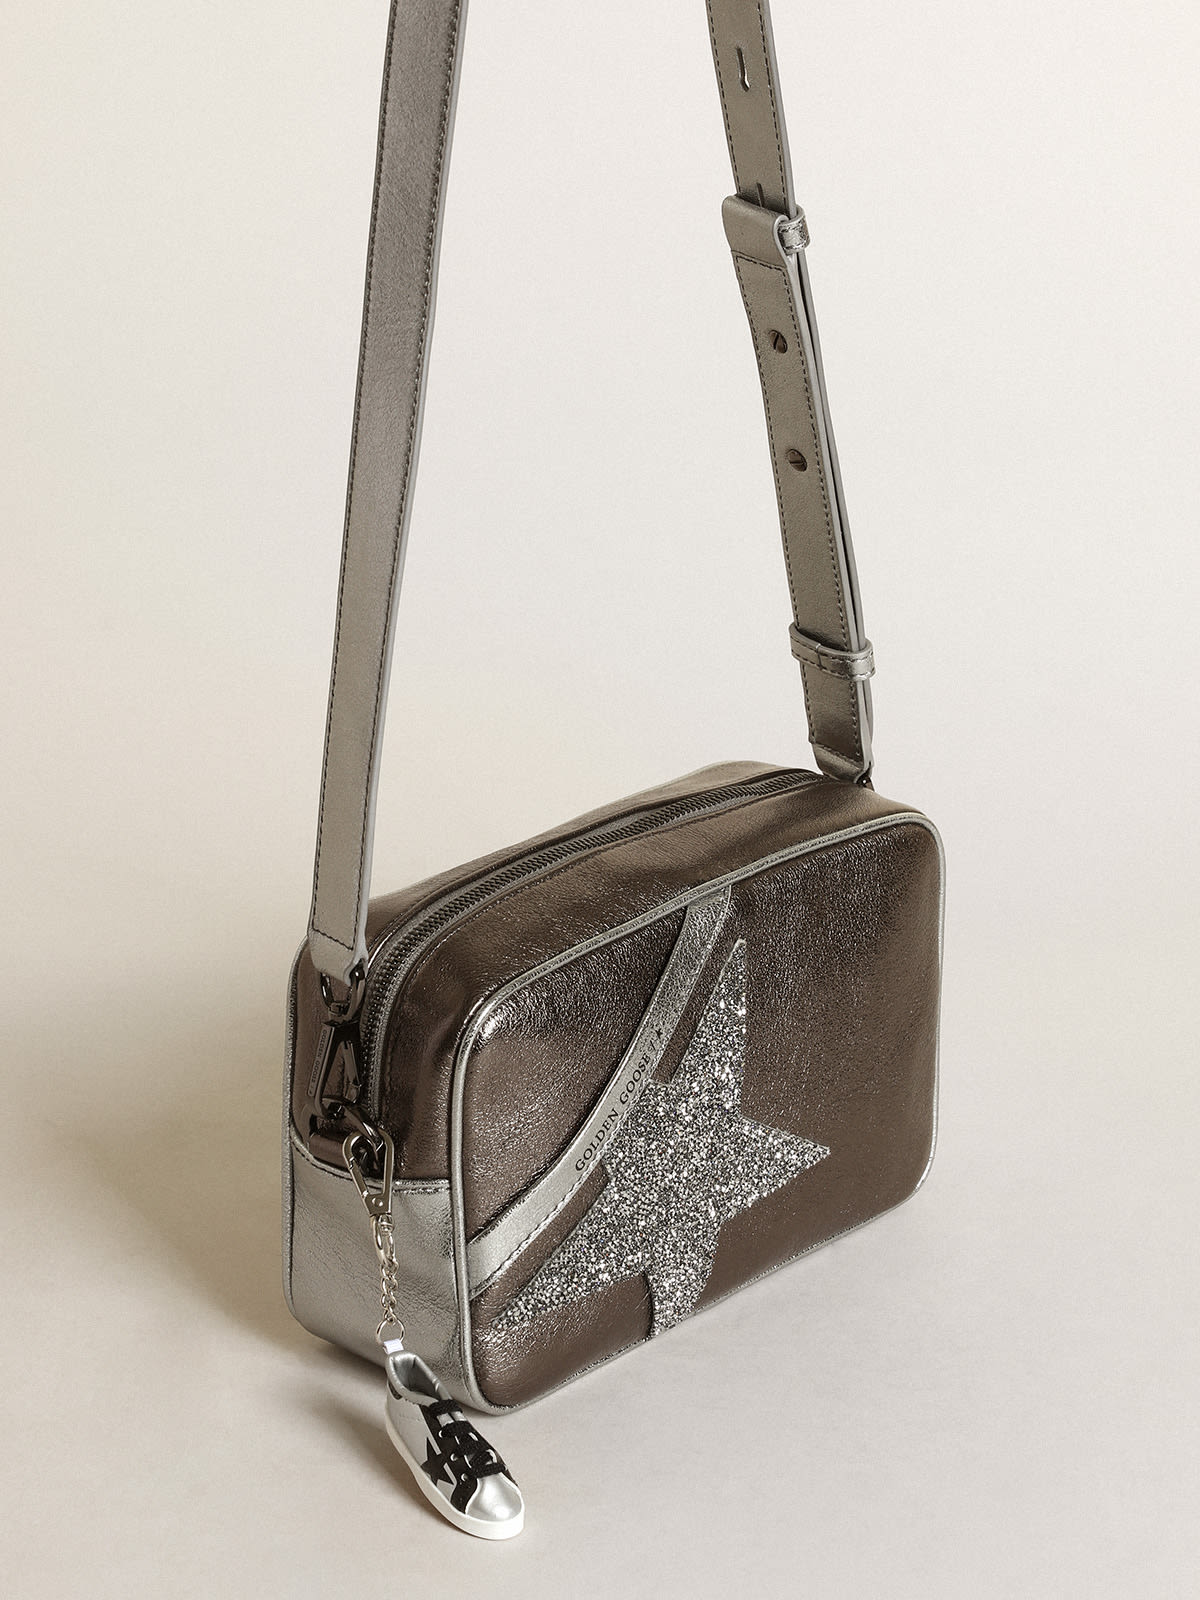 Golden Goose - Bolso Star Bag de piel laminada color plateado y gris antracita con estrella de cristales Swarovski in 